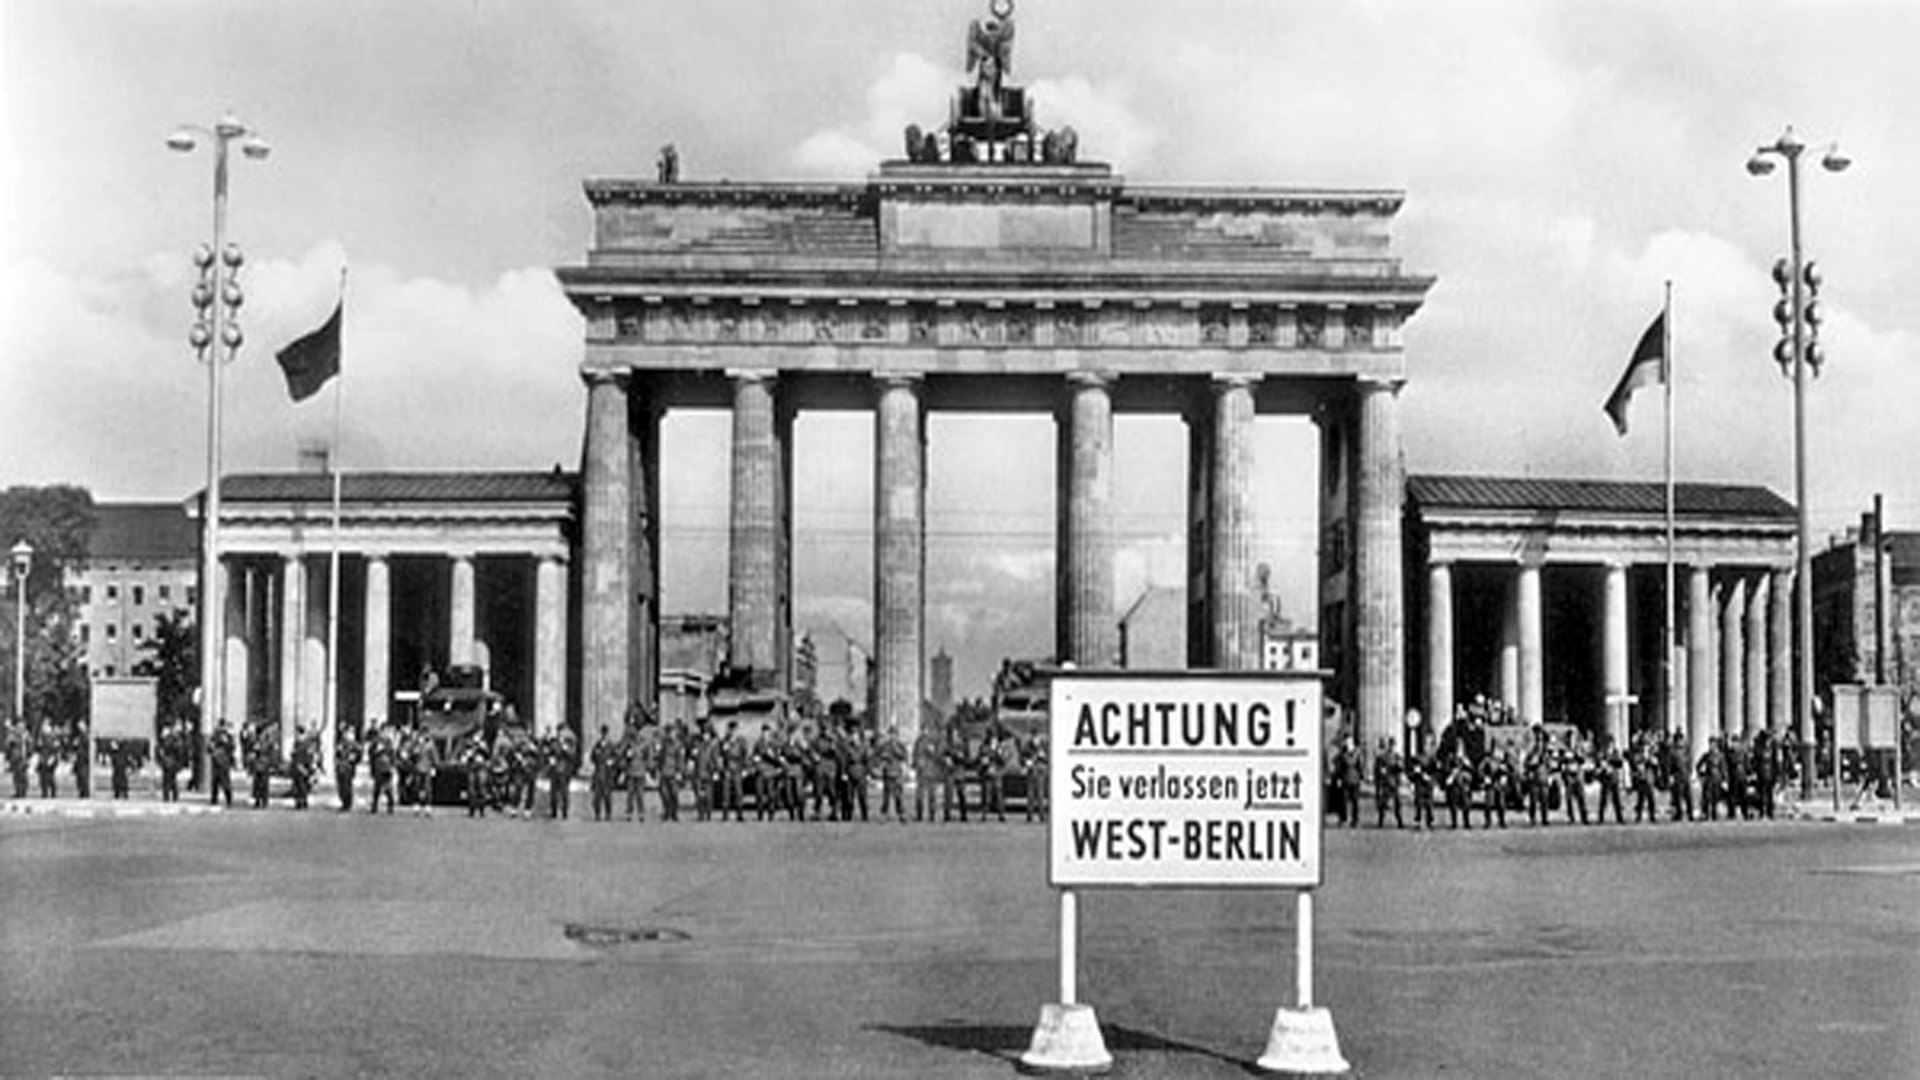 Schwarzweiß-Bild: Brandenburger Tor mit Schild "Achtung! Sie verlassen jetzt West-Berlin" davor.